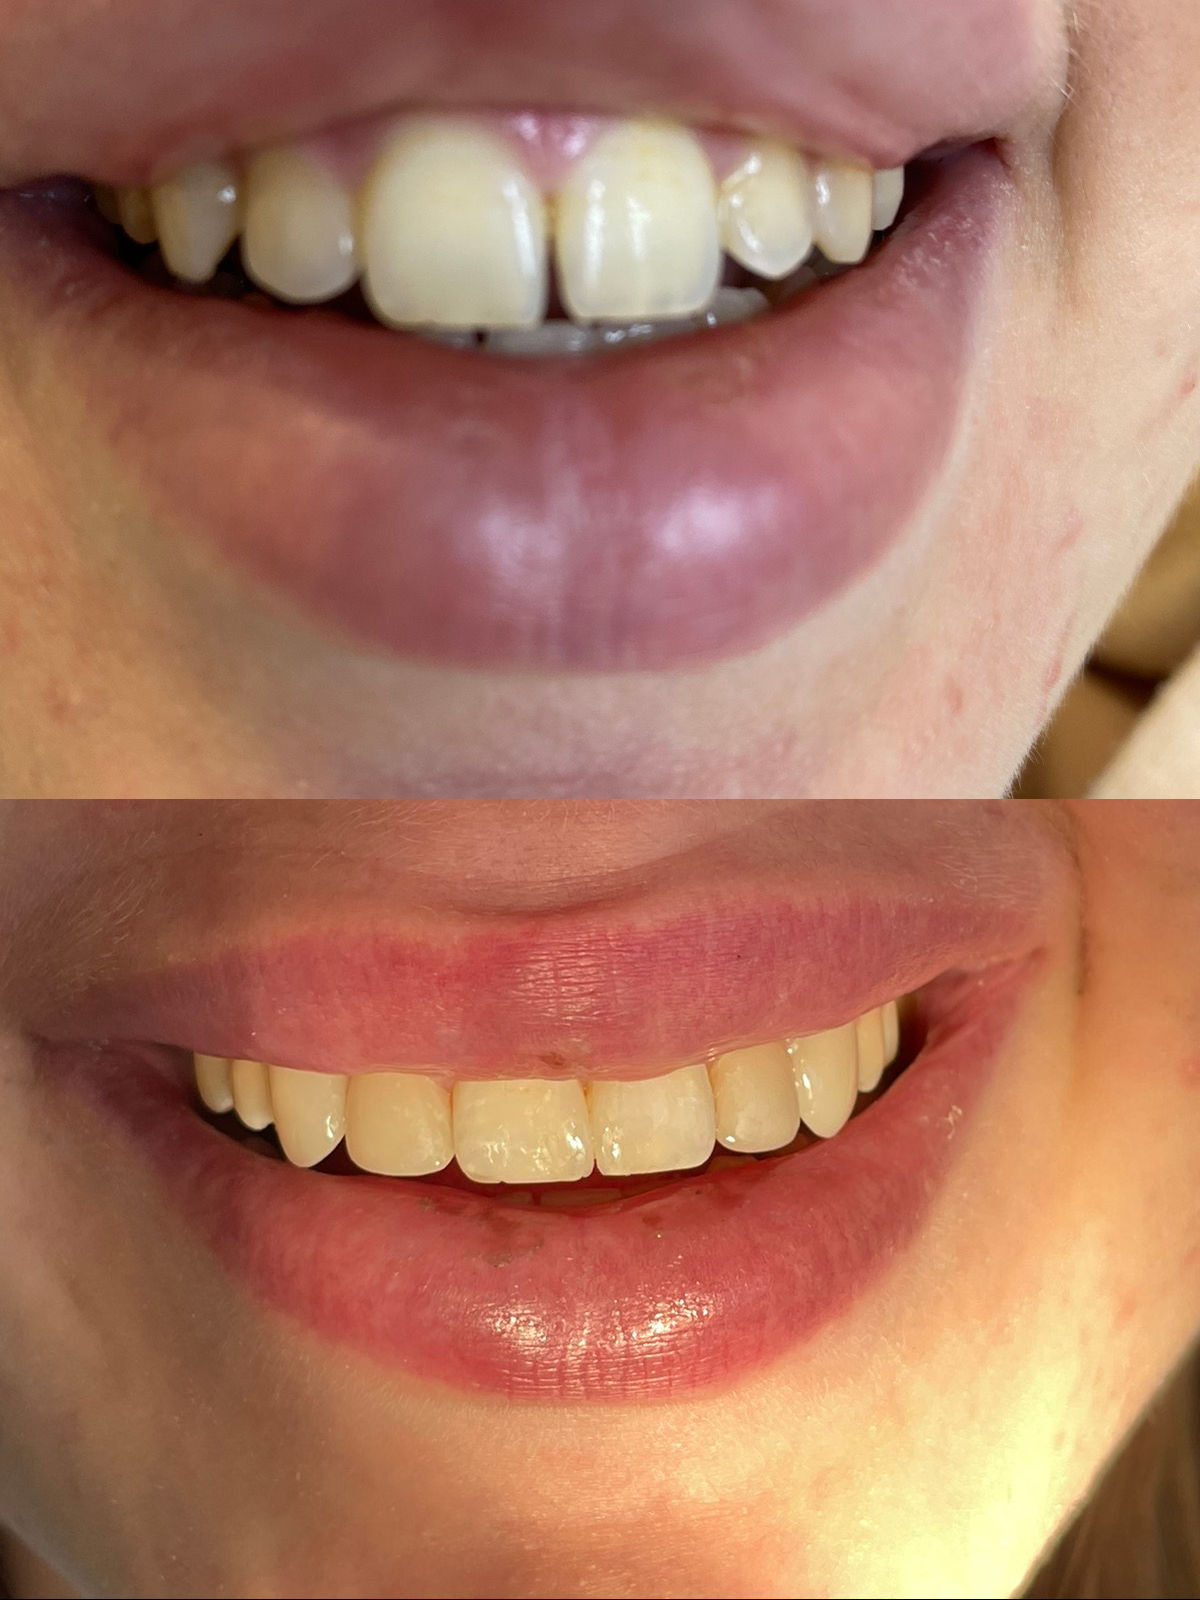 реставрация 4-х передних зубов фотополимером до и после  Киев 0521